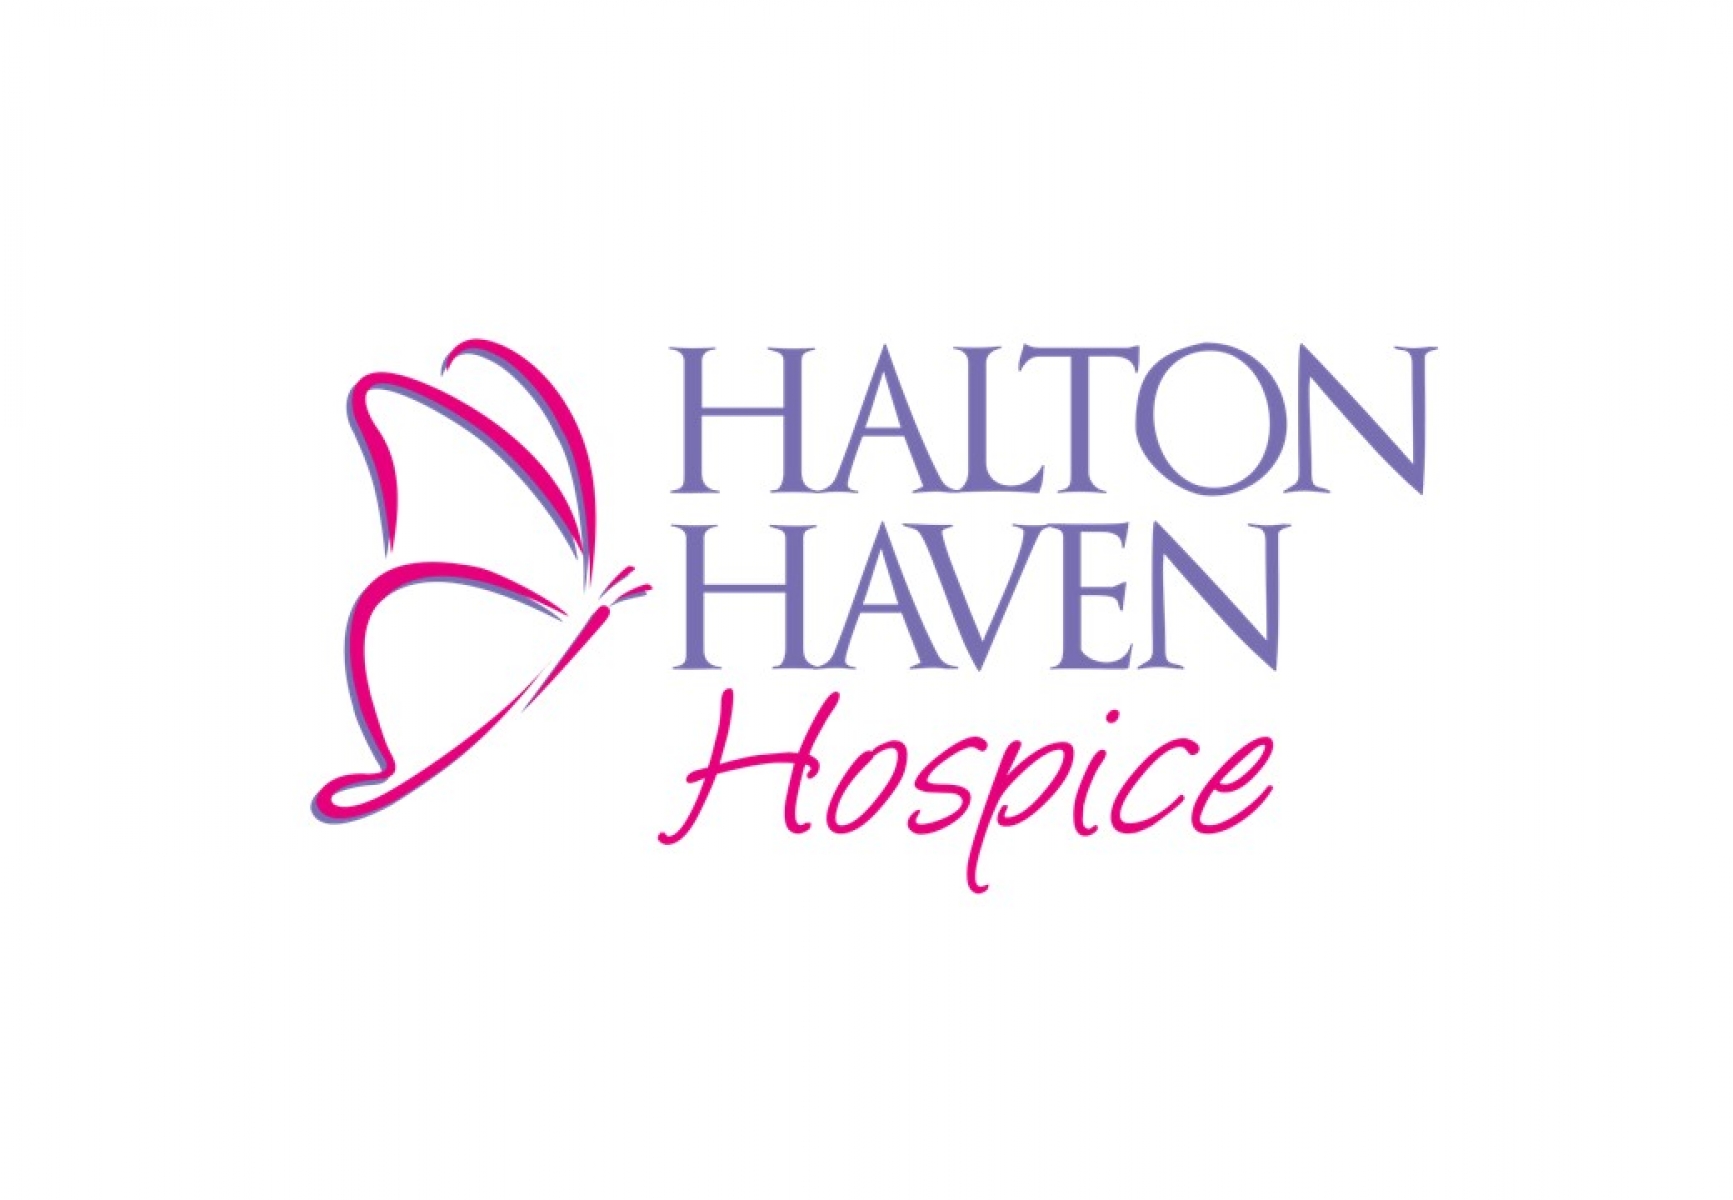 Halton Haven Hospice eCards